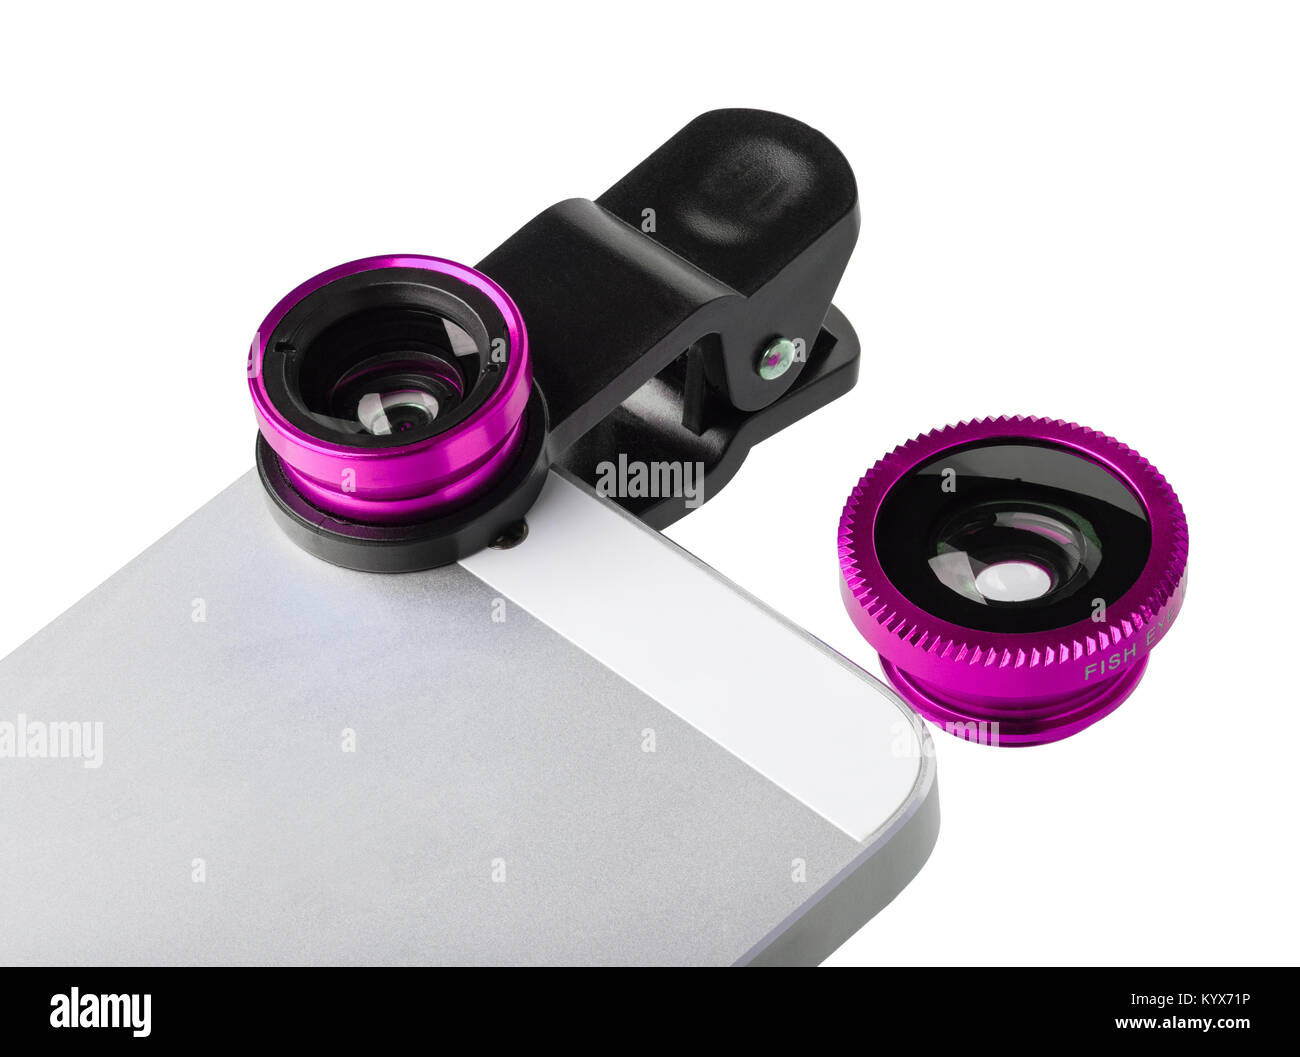 Clip - Lente Lente fotográfico universal para teléfono móvil. Las lentes son de color rosa. Uno de ellos está instalado en el teléfono móvil, el otro se encuentra cerca Foto de stock